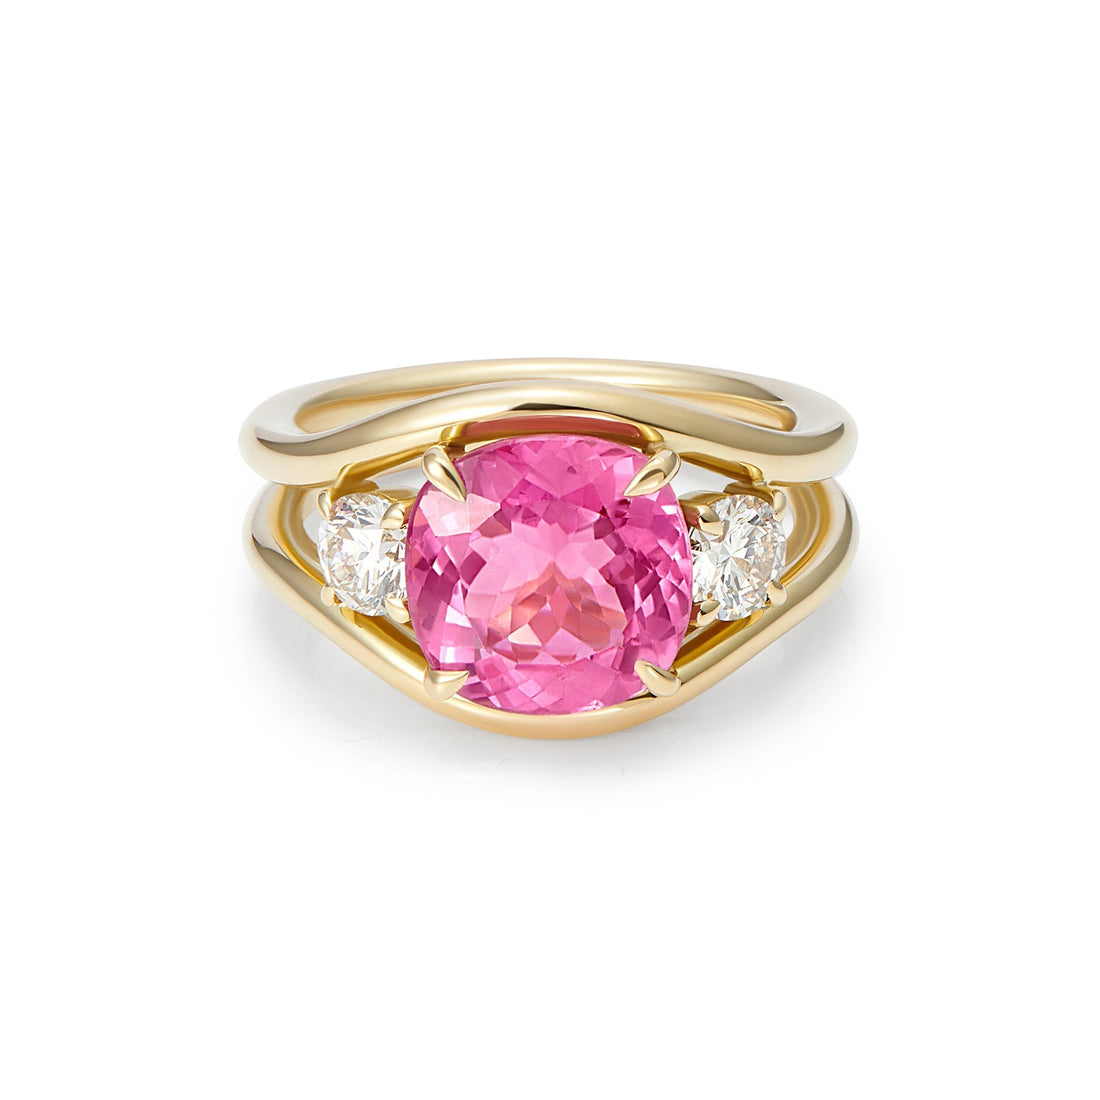 Pink tourmaline and white diamond ring by Minka Jewels | The Cut London